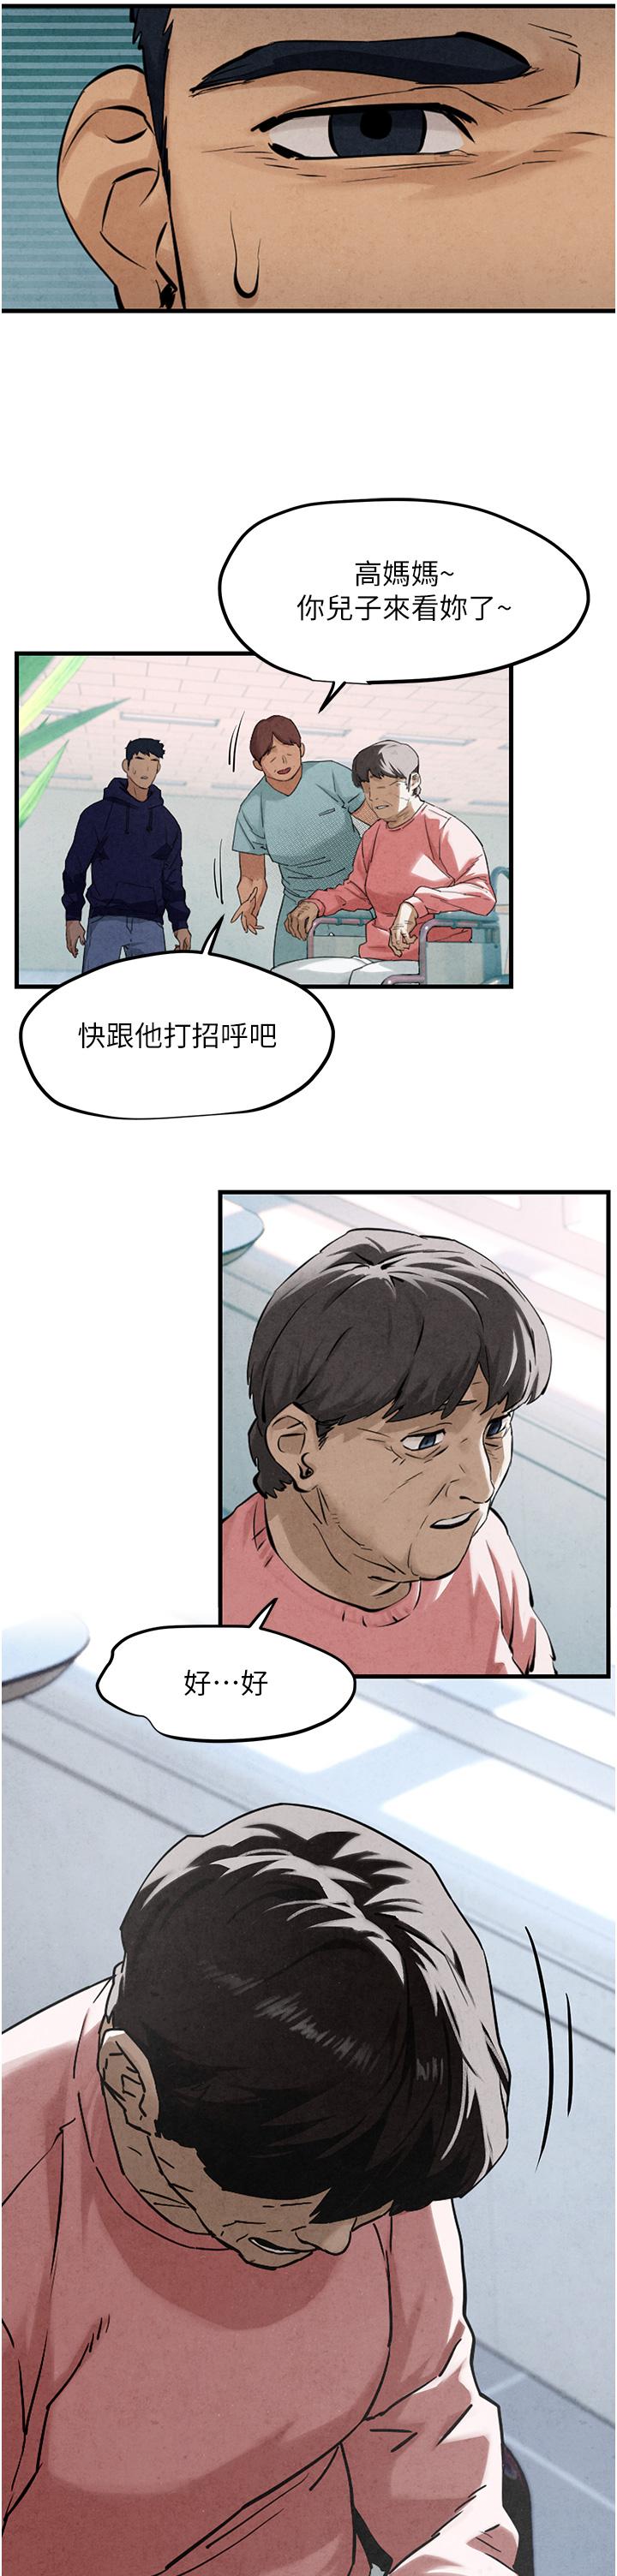 韩国污漫画 欲海交鋒 第2话 第1位顾客:欲求不满的人妻 34